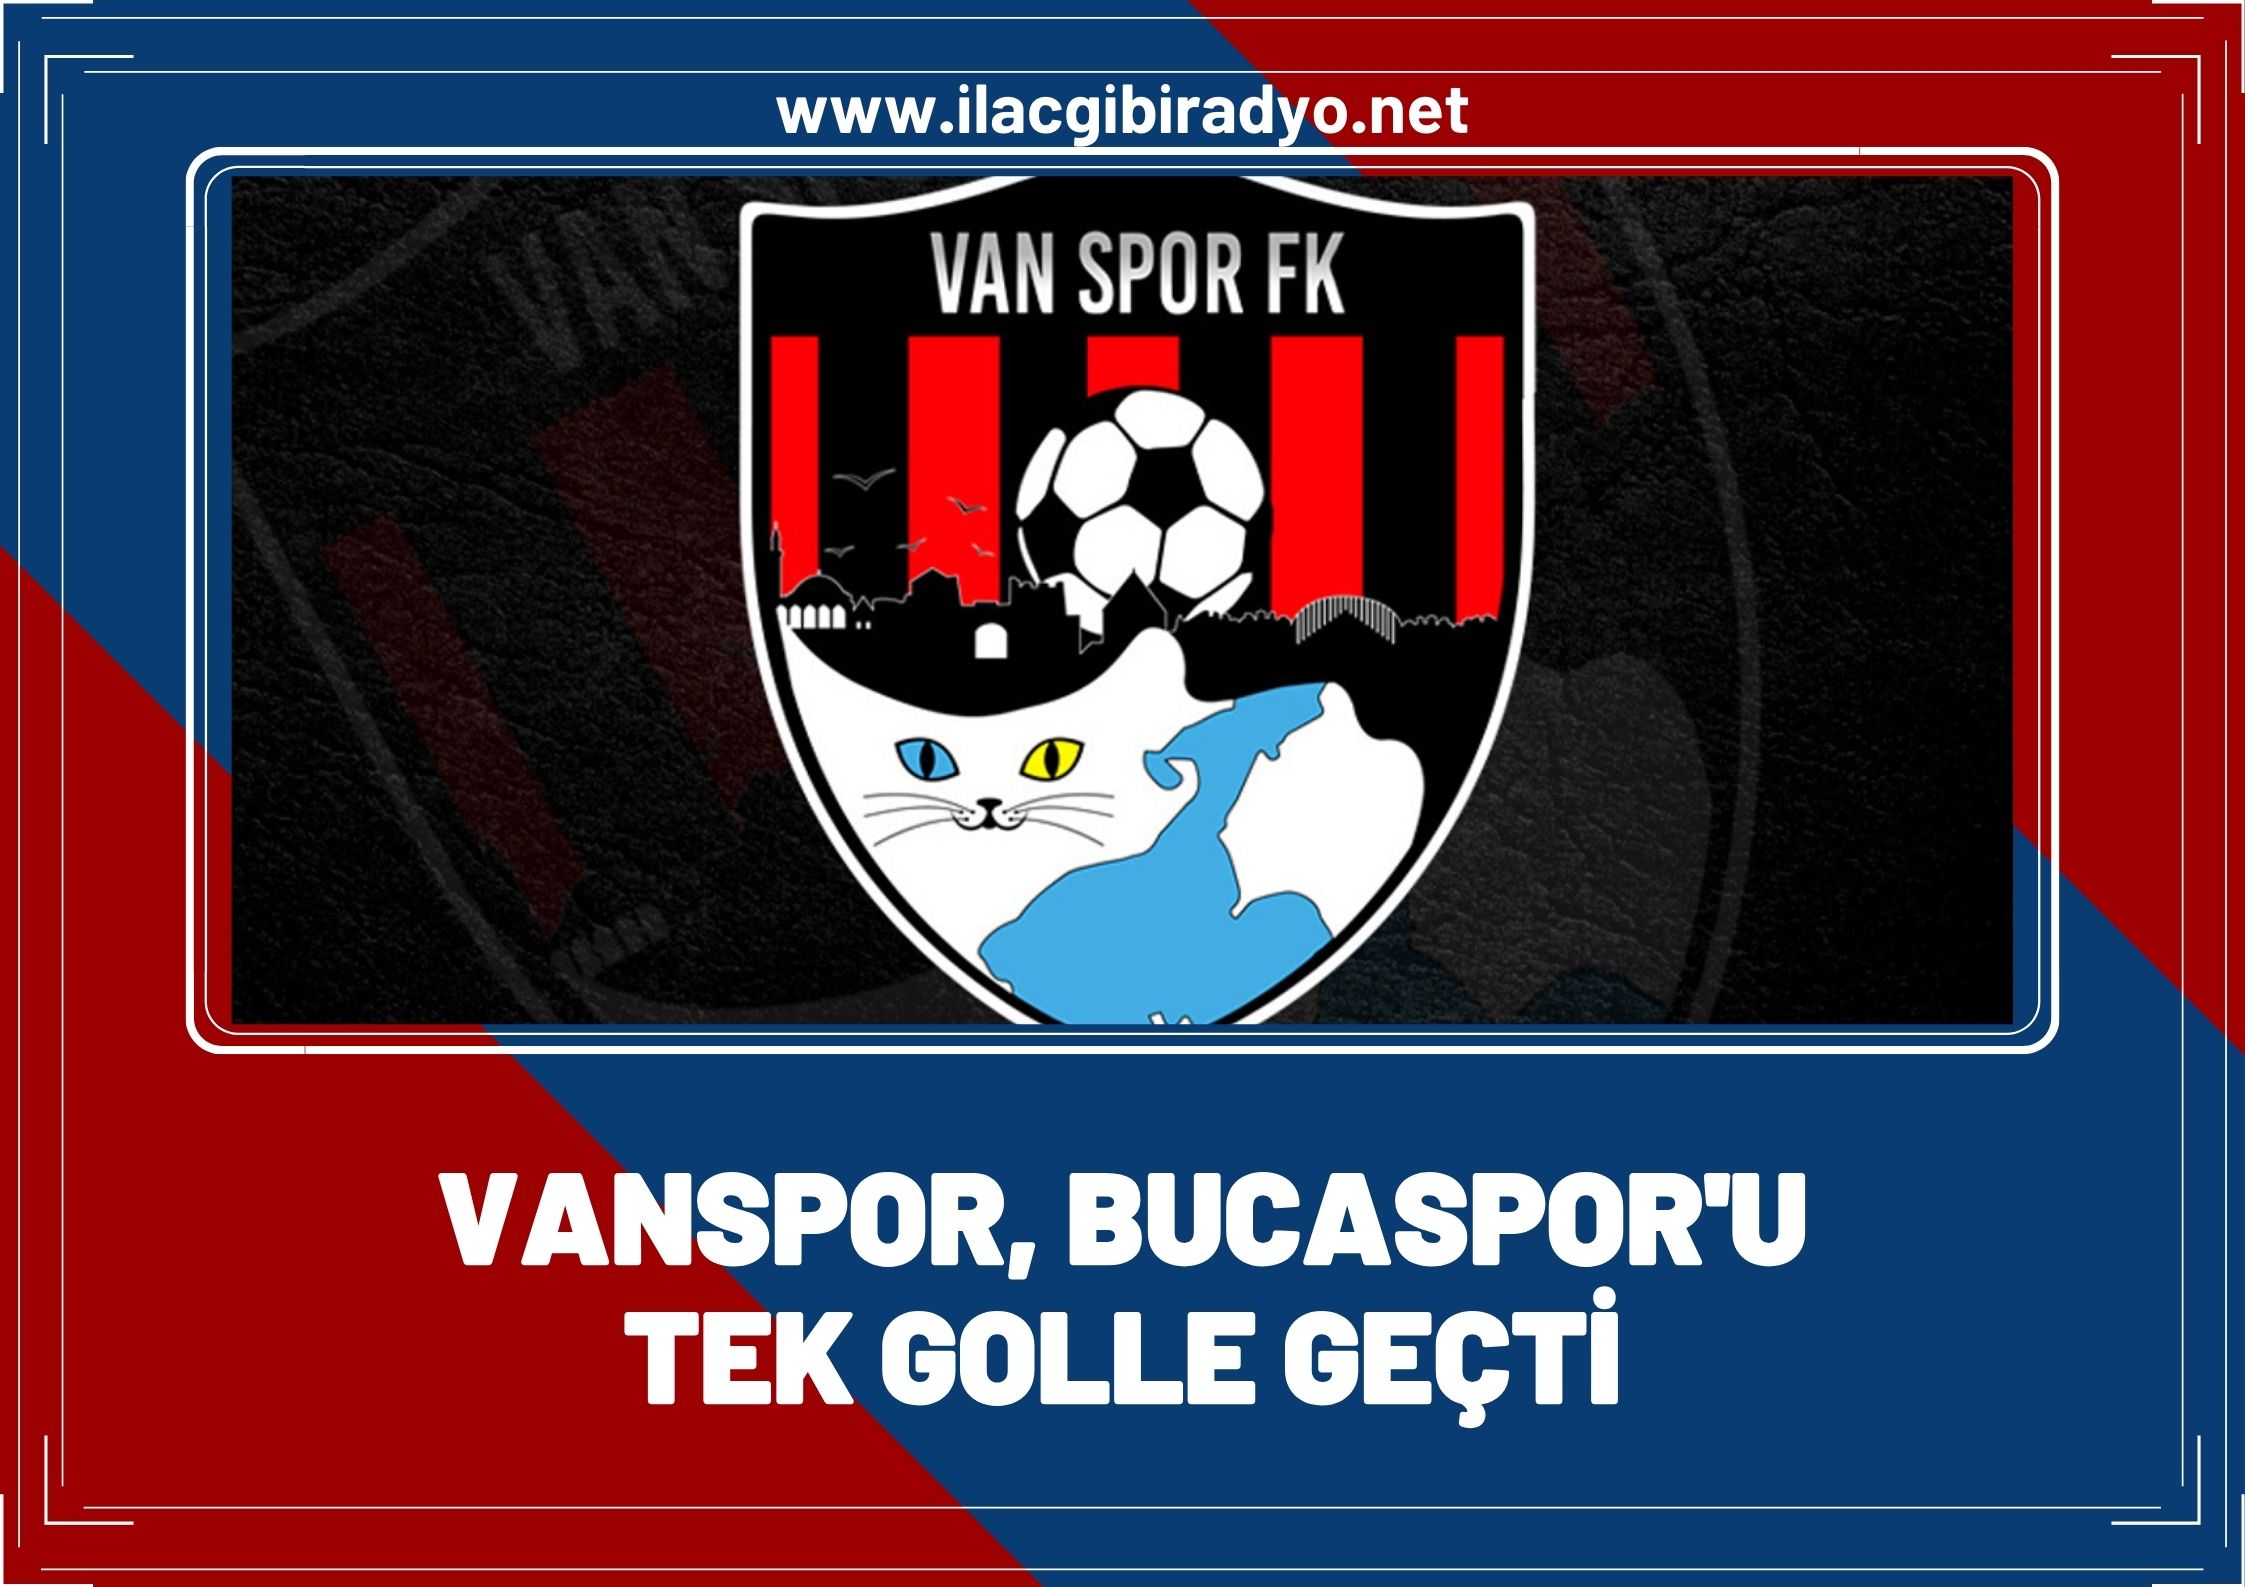 Van Spor, Bucaspor'un 17 maçlık yenilmezlik serisini bozdu!